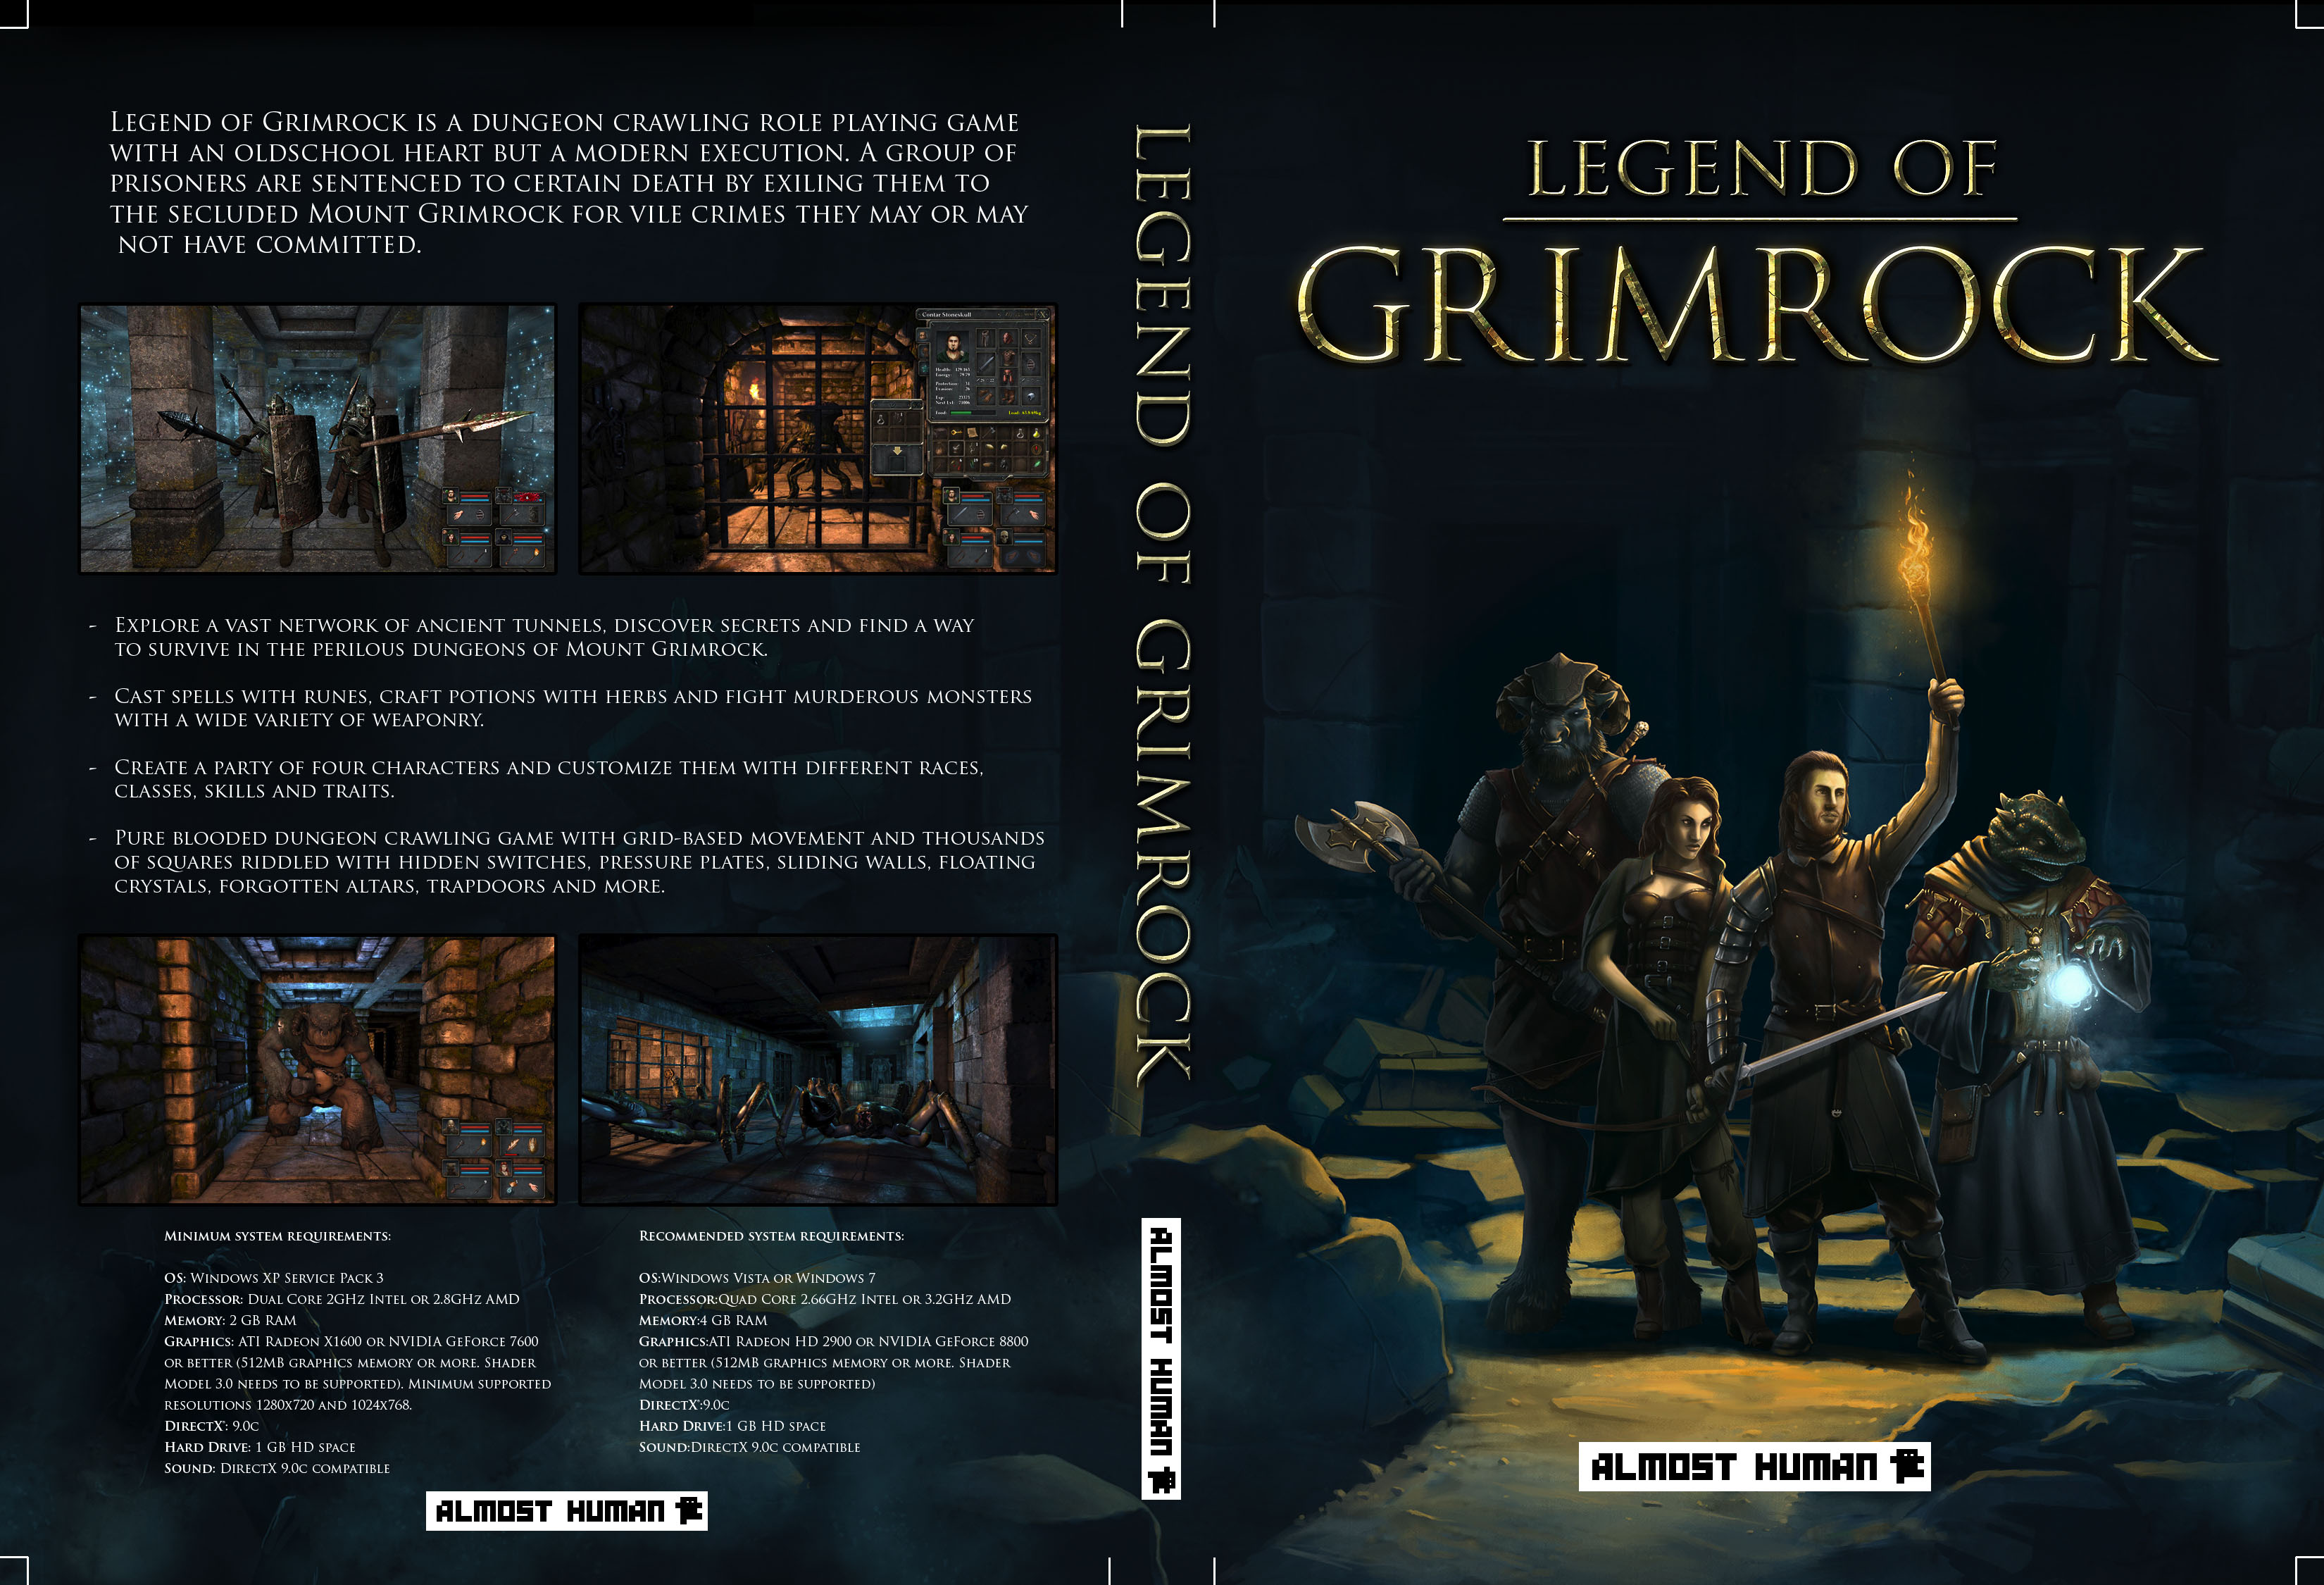 Legend Of Grimrock HD wallpapers, Desktop wallpaper - most viewed